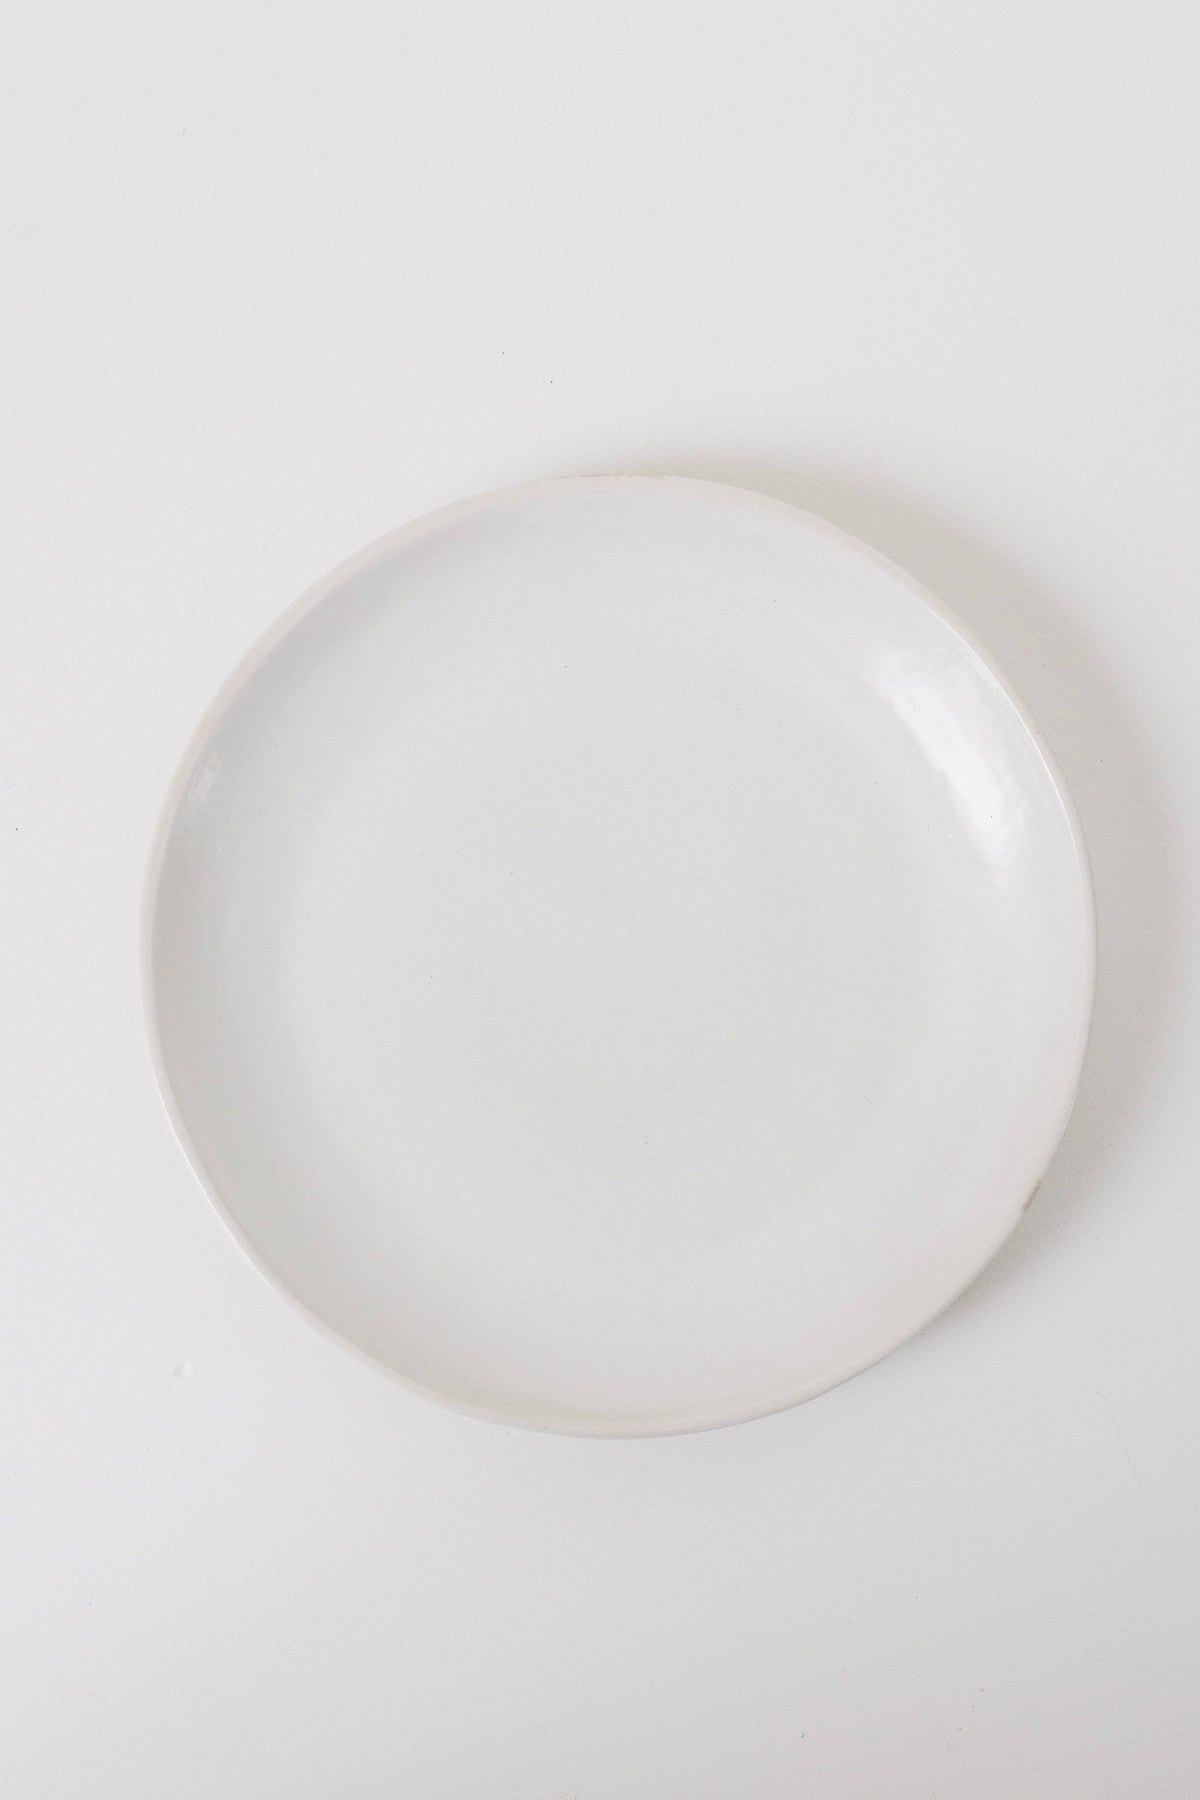 Drift Dinner Plate - Matte White - Set of 6